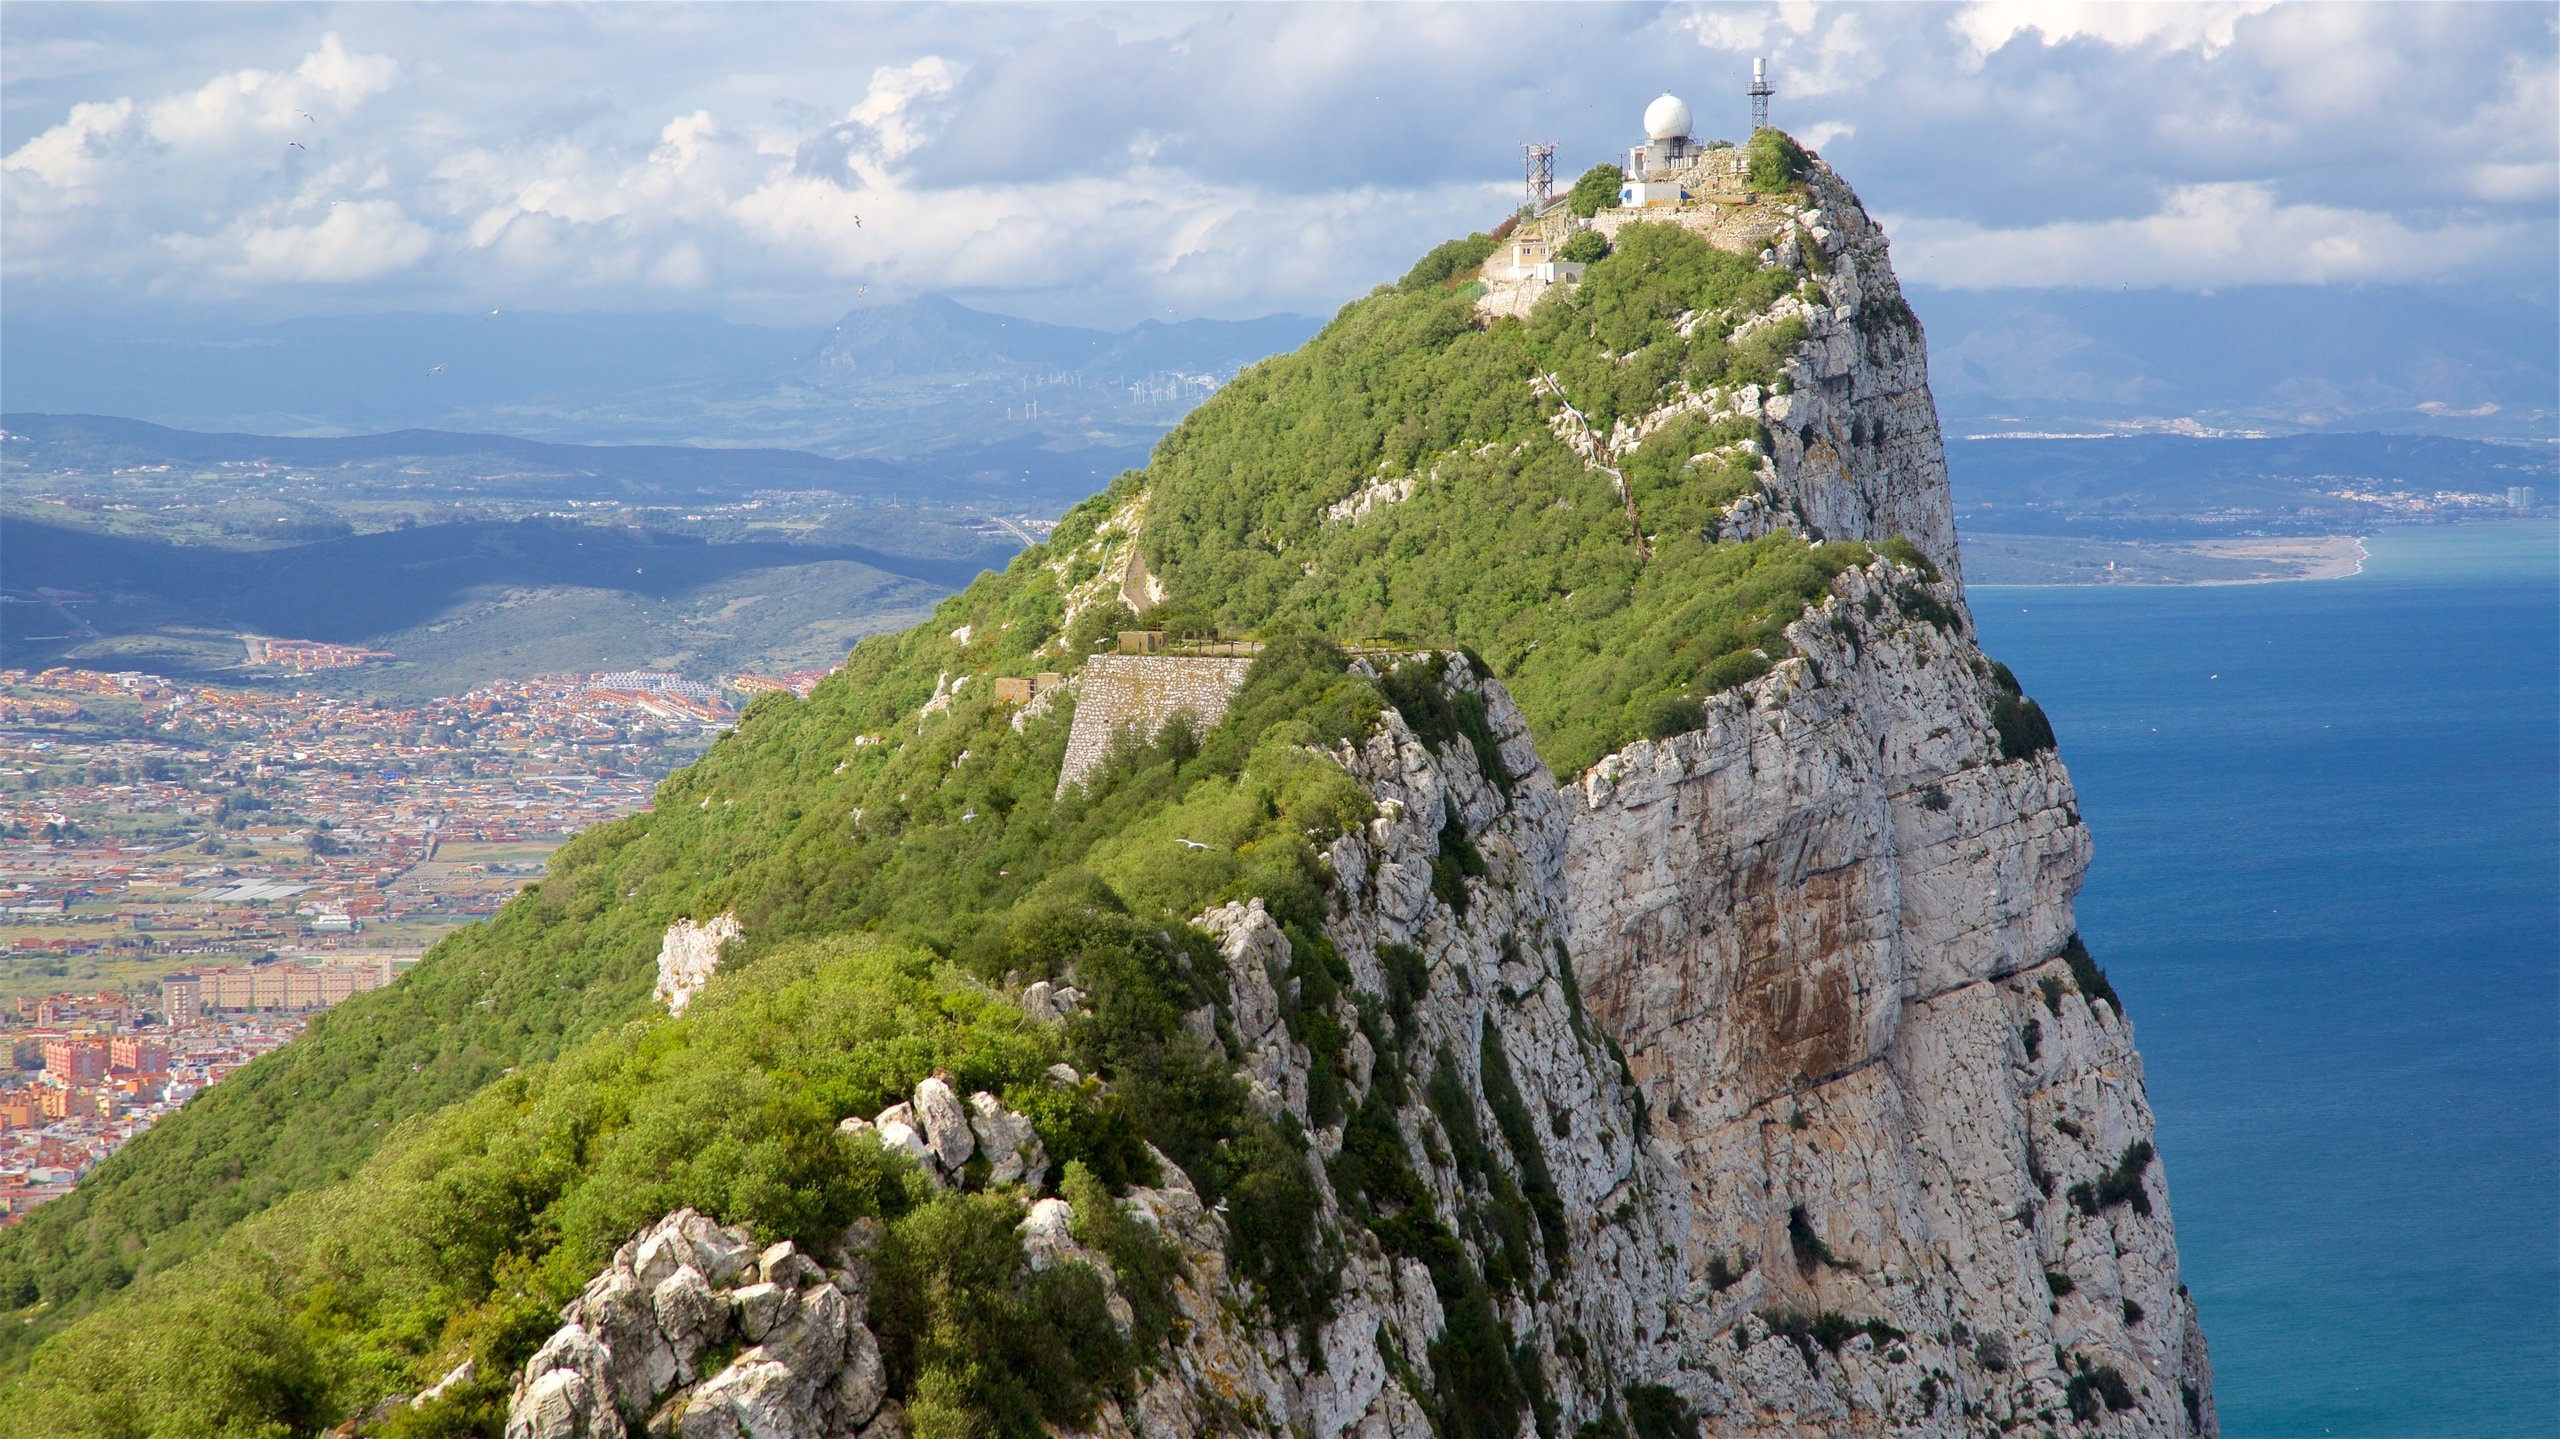 Rock of Gibraltar, Holiday rentals, Vibrant flats, Memorable apartments, 2560x1440 HD Desktop